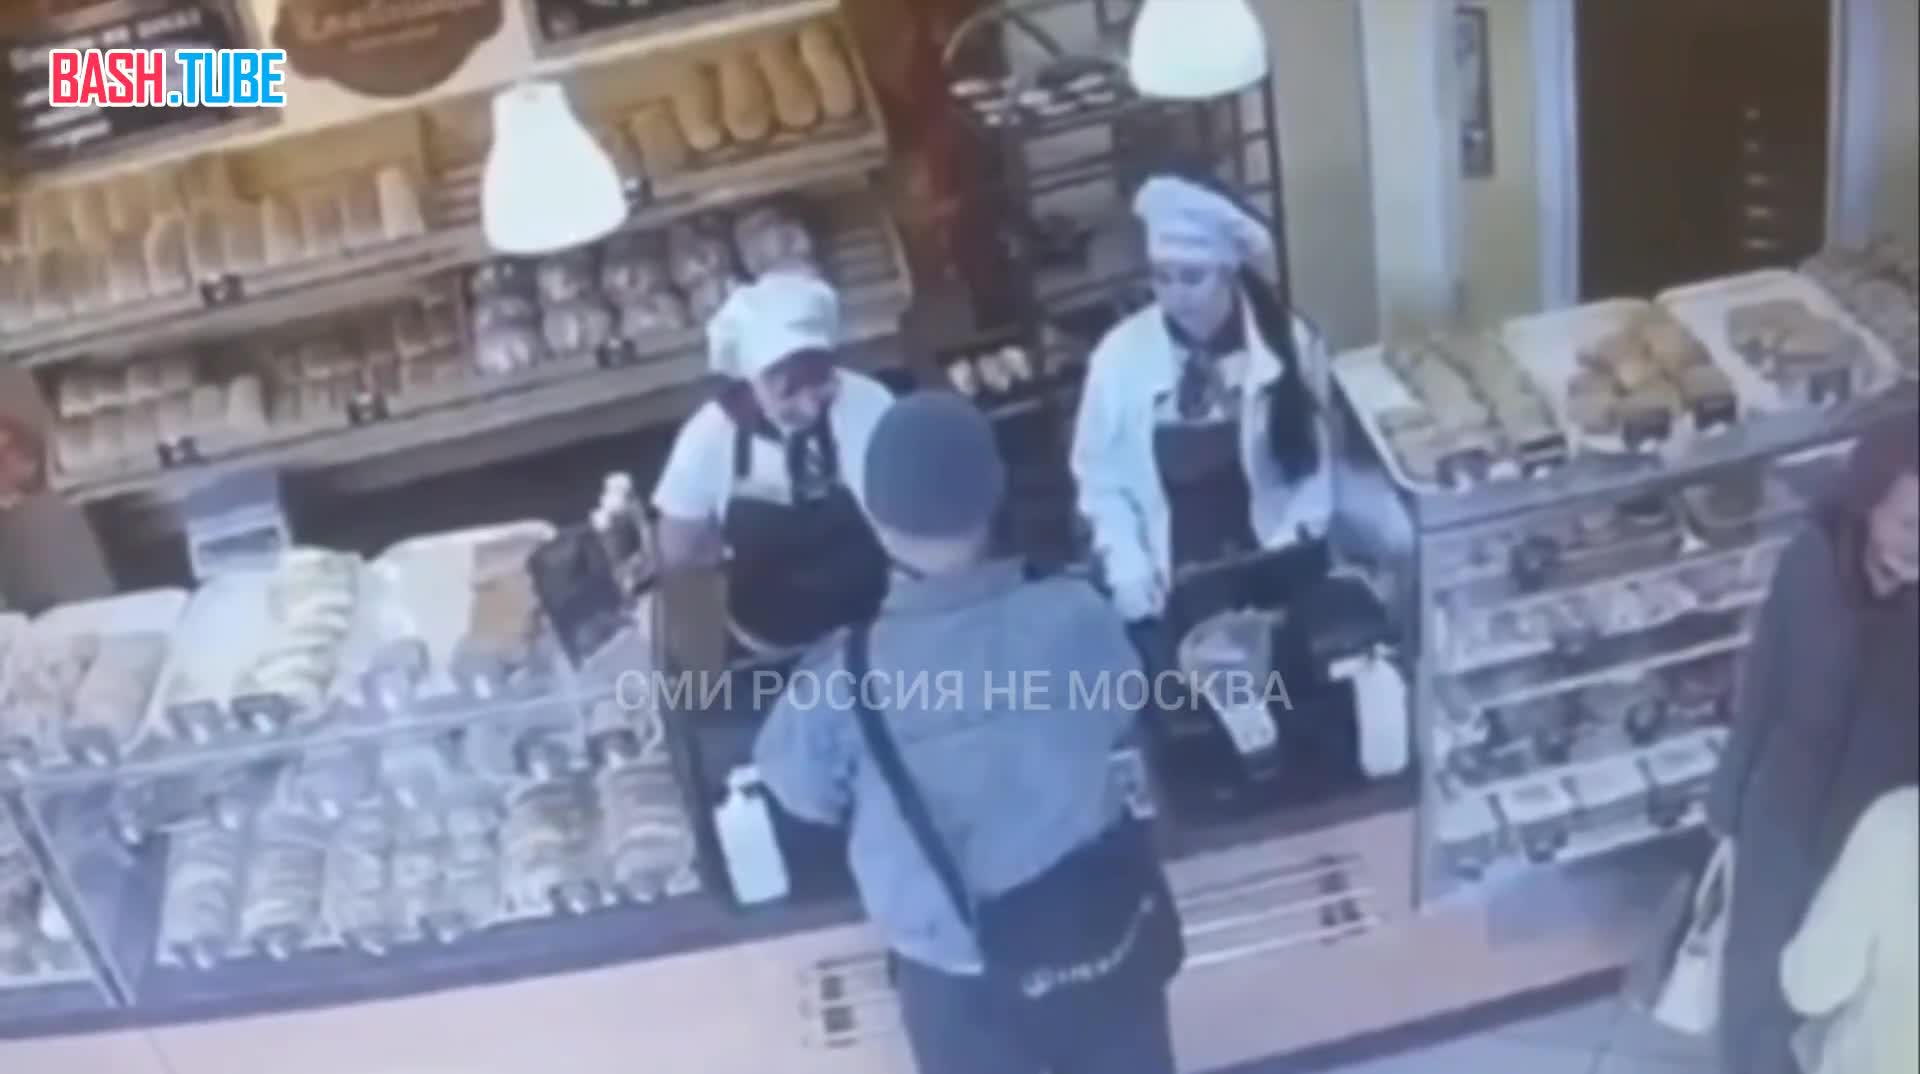  В Череповце мужчина взорвал в пекарне страйкбольную гранату из-за того, что ему отказали в бесплатной еде